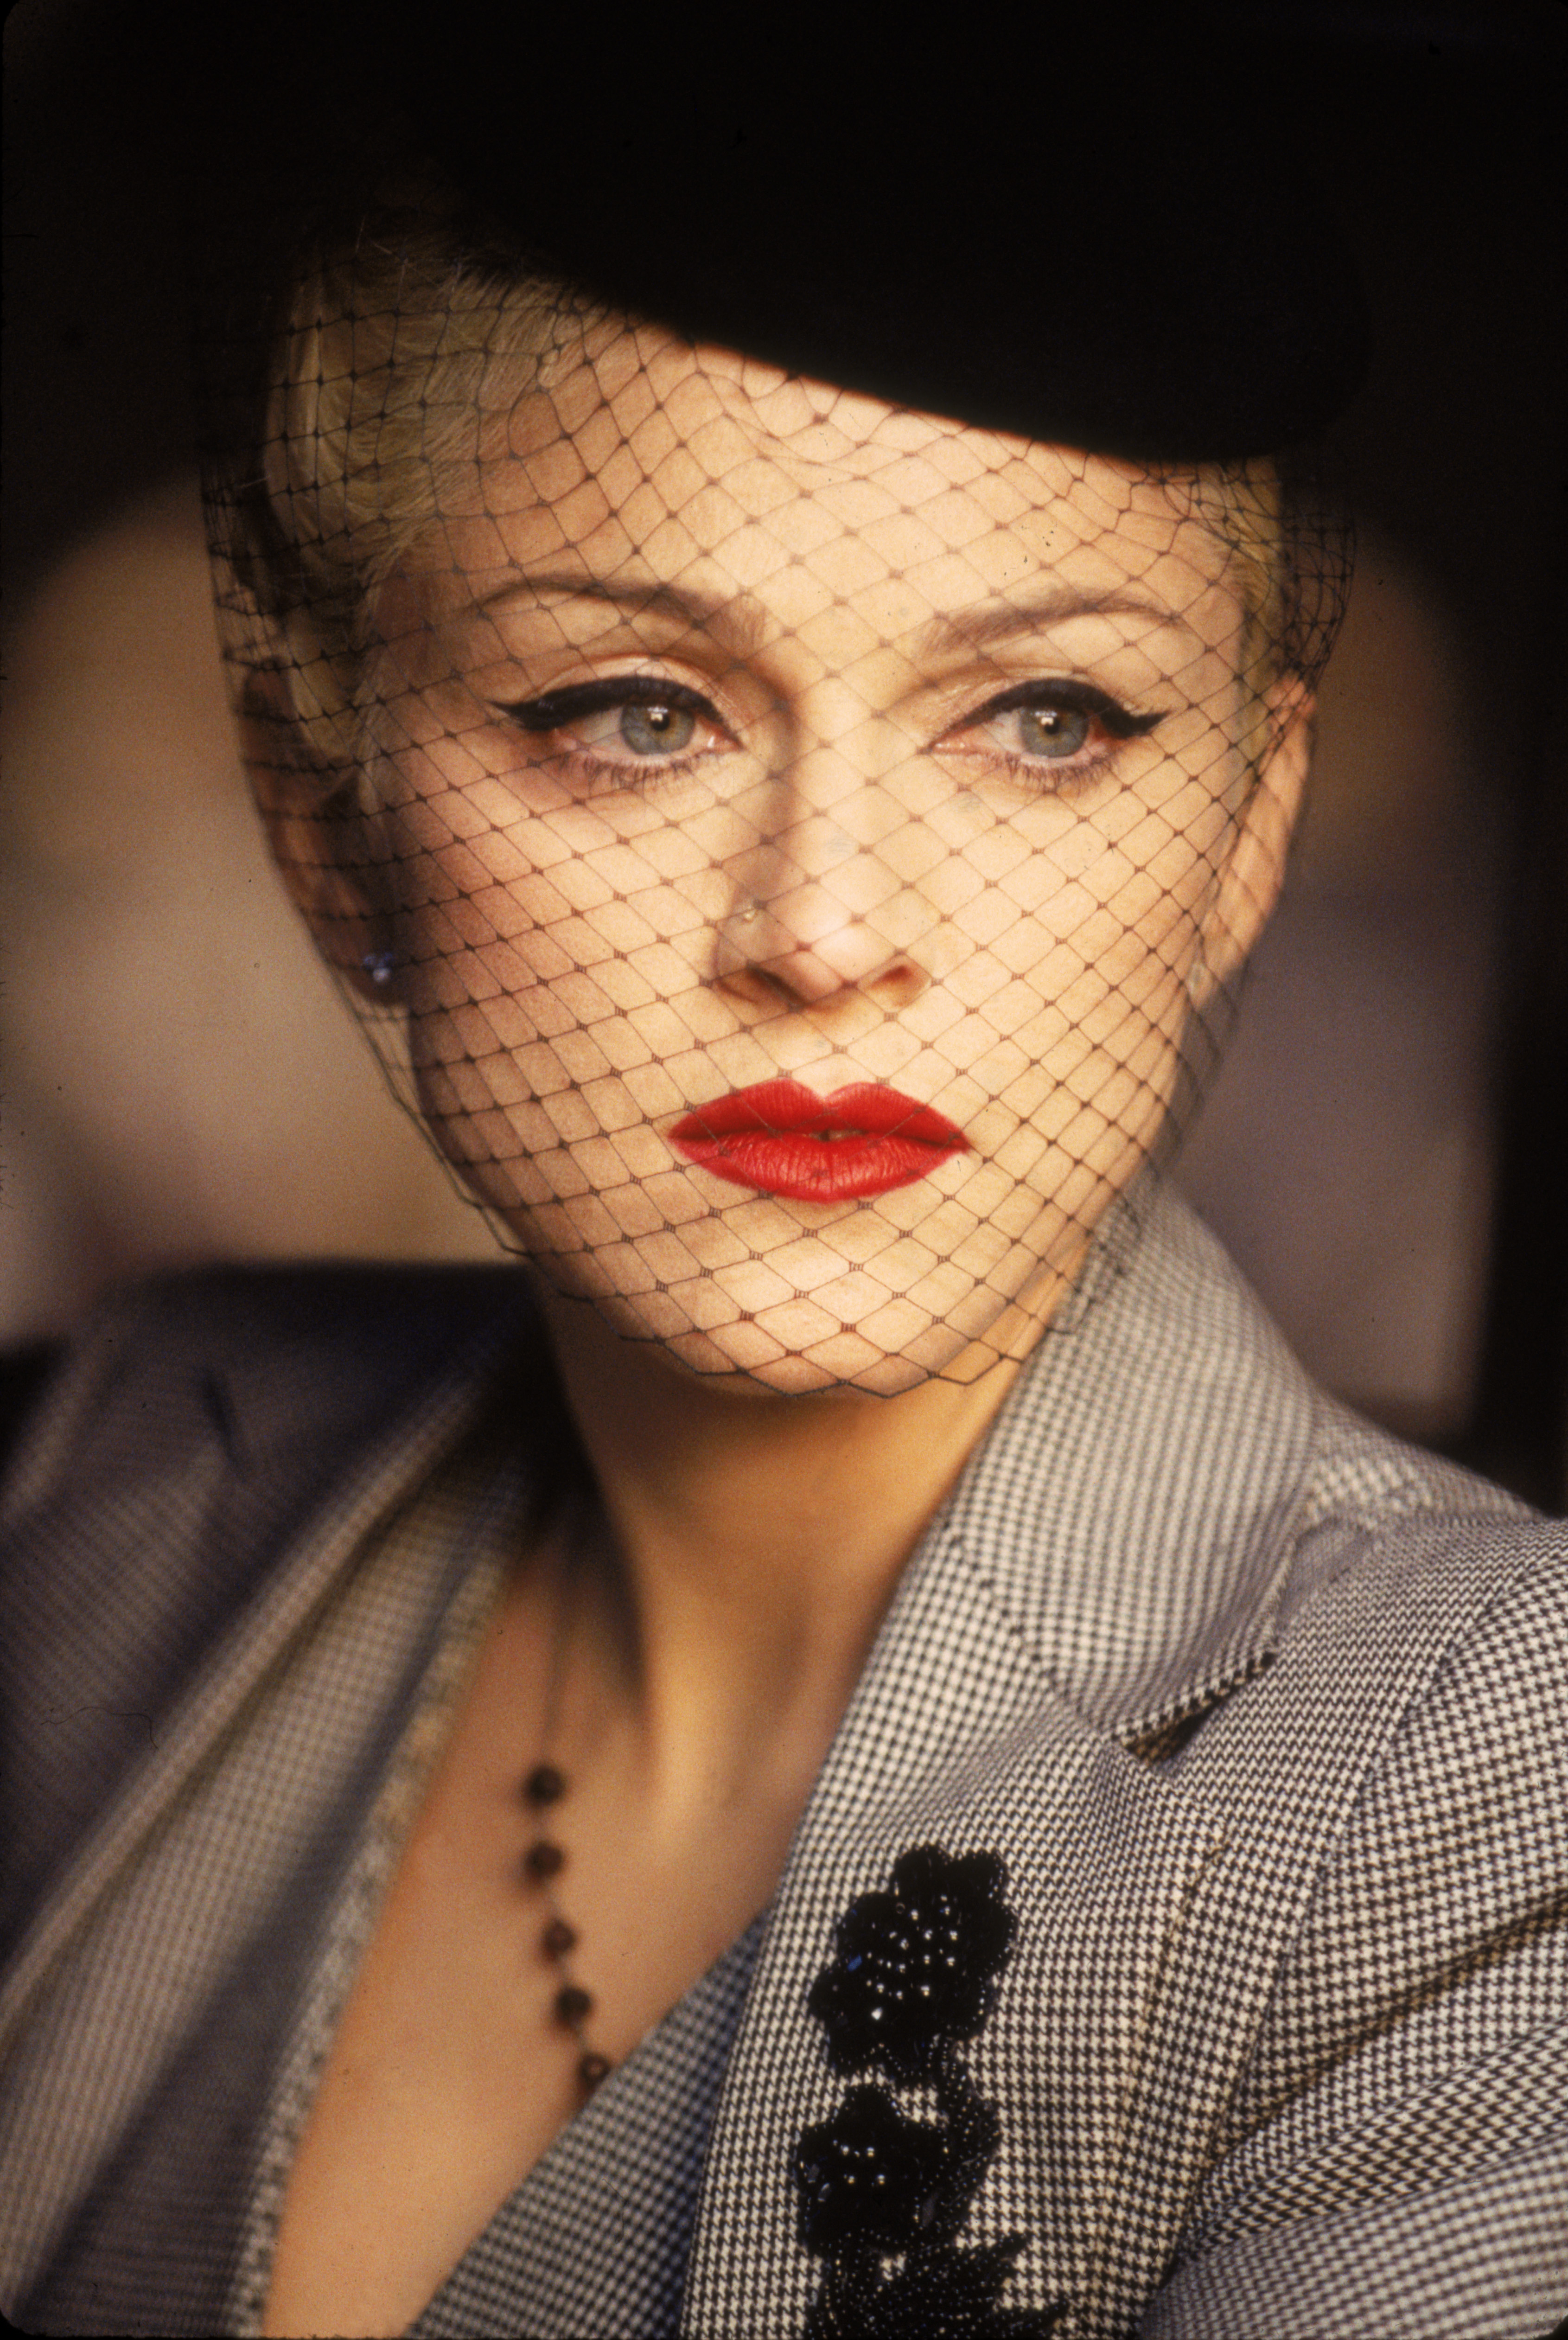 Madonna dans un clip vidéo pour sa chanson "Take A Bow" en 1994 | Source : Getty Images